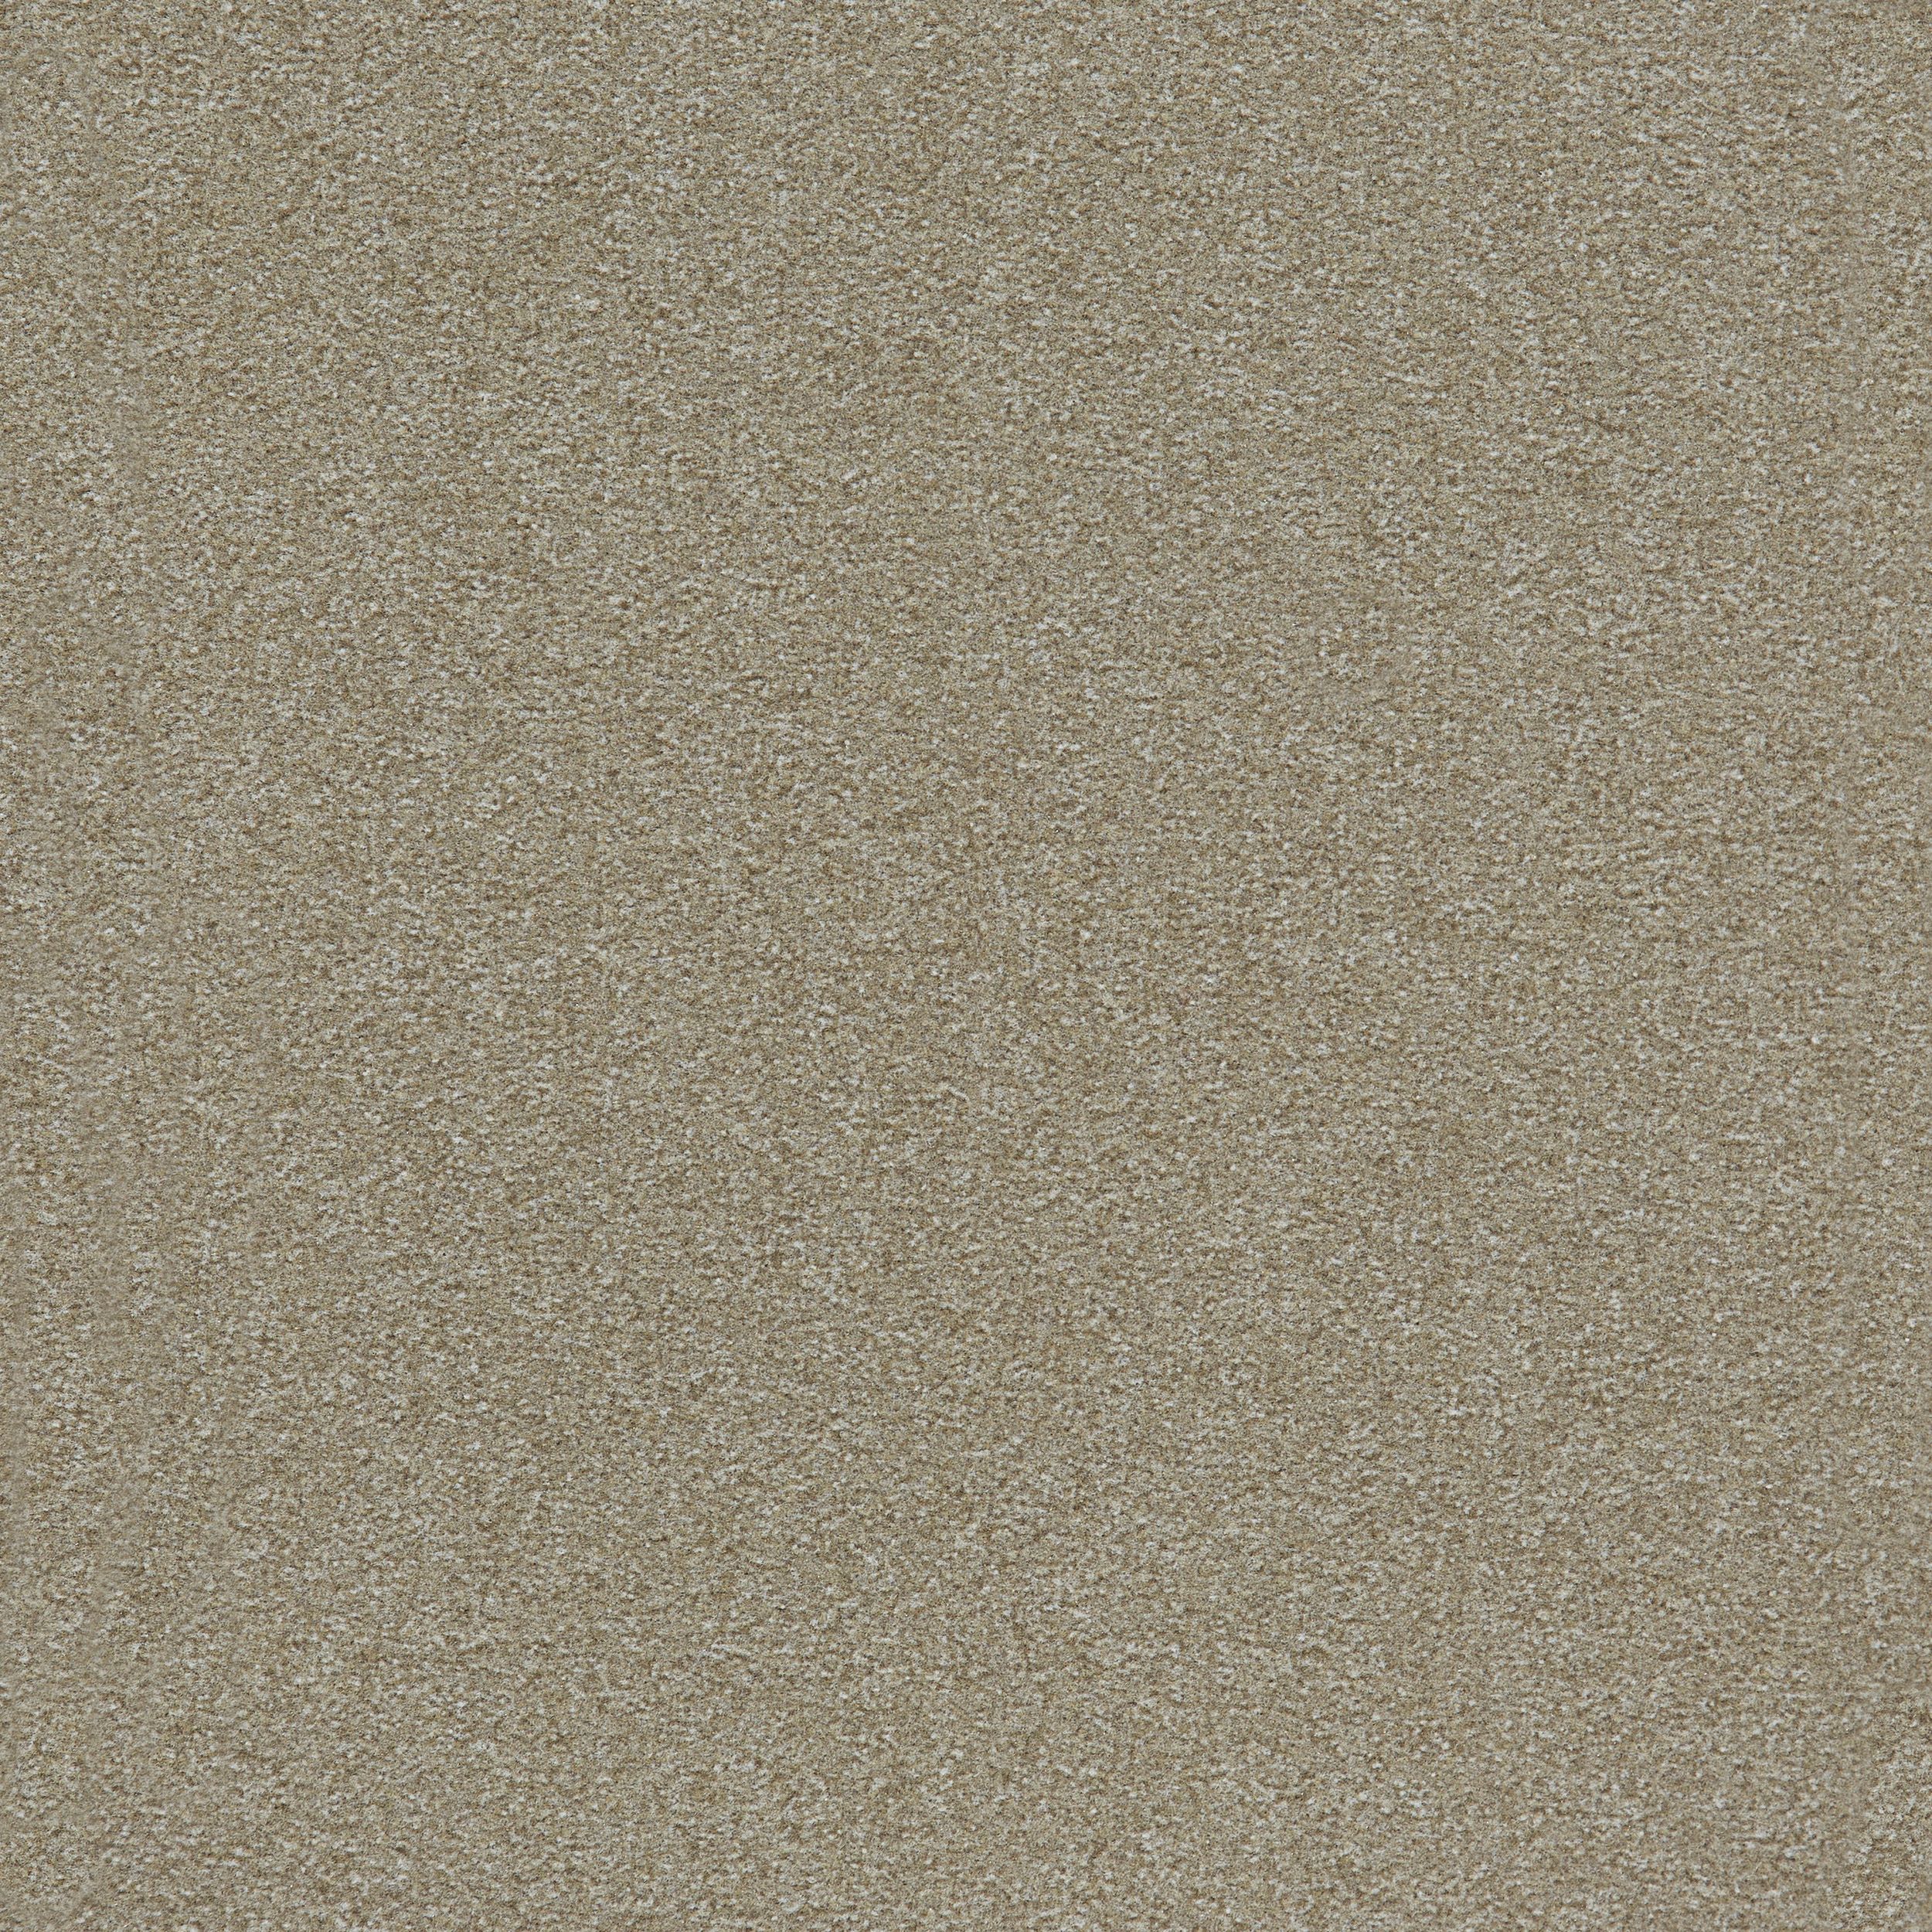 Heuga 725 Carpet Tile In Oyster Bildnummer 3